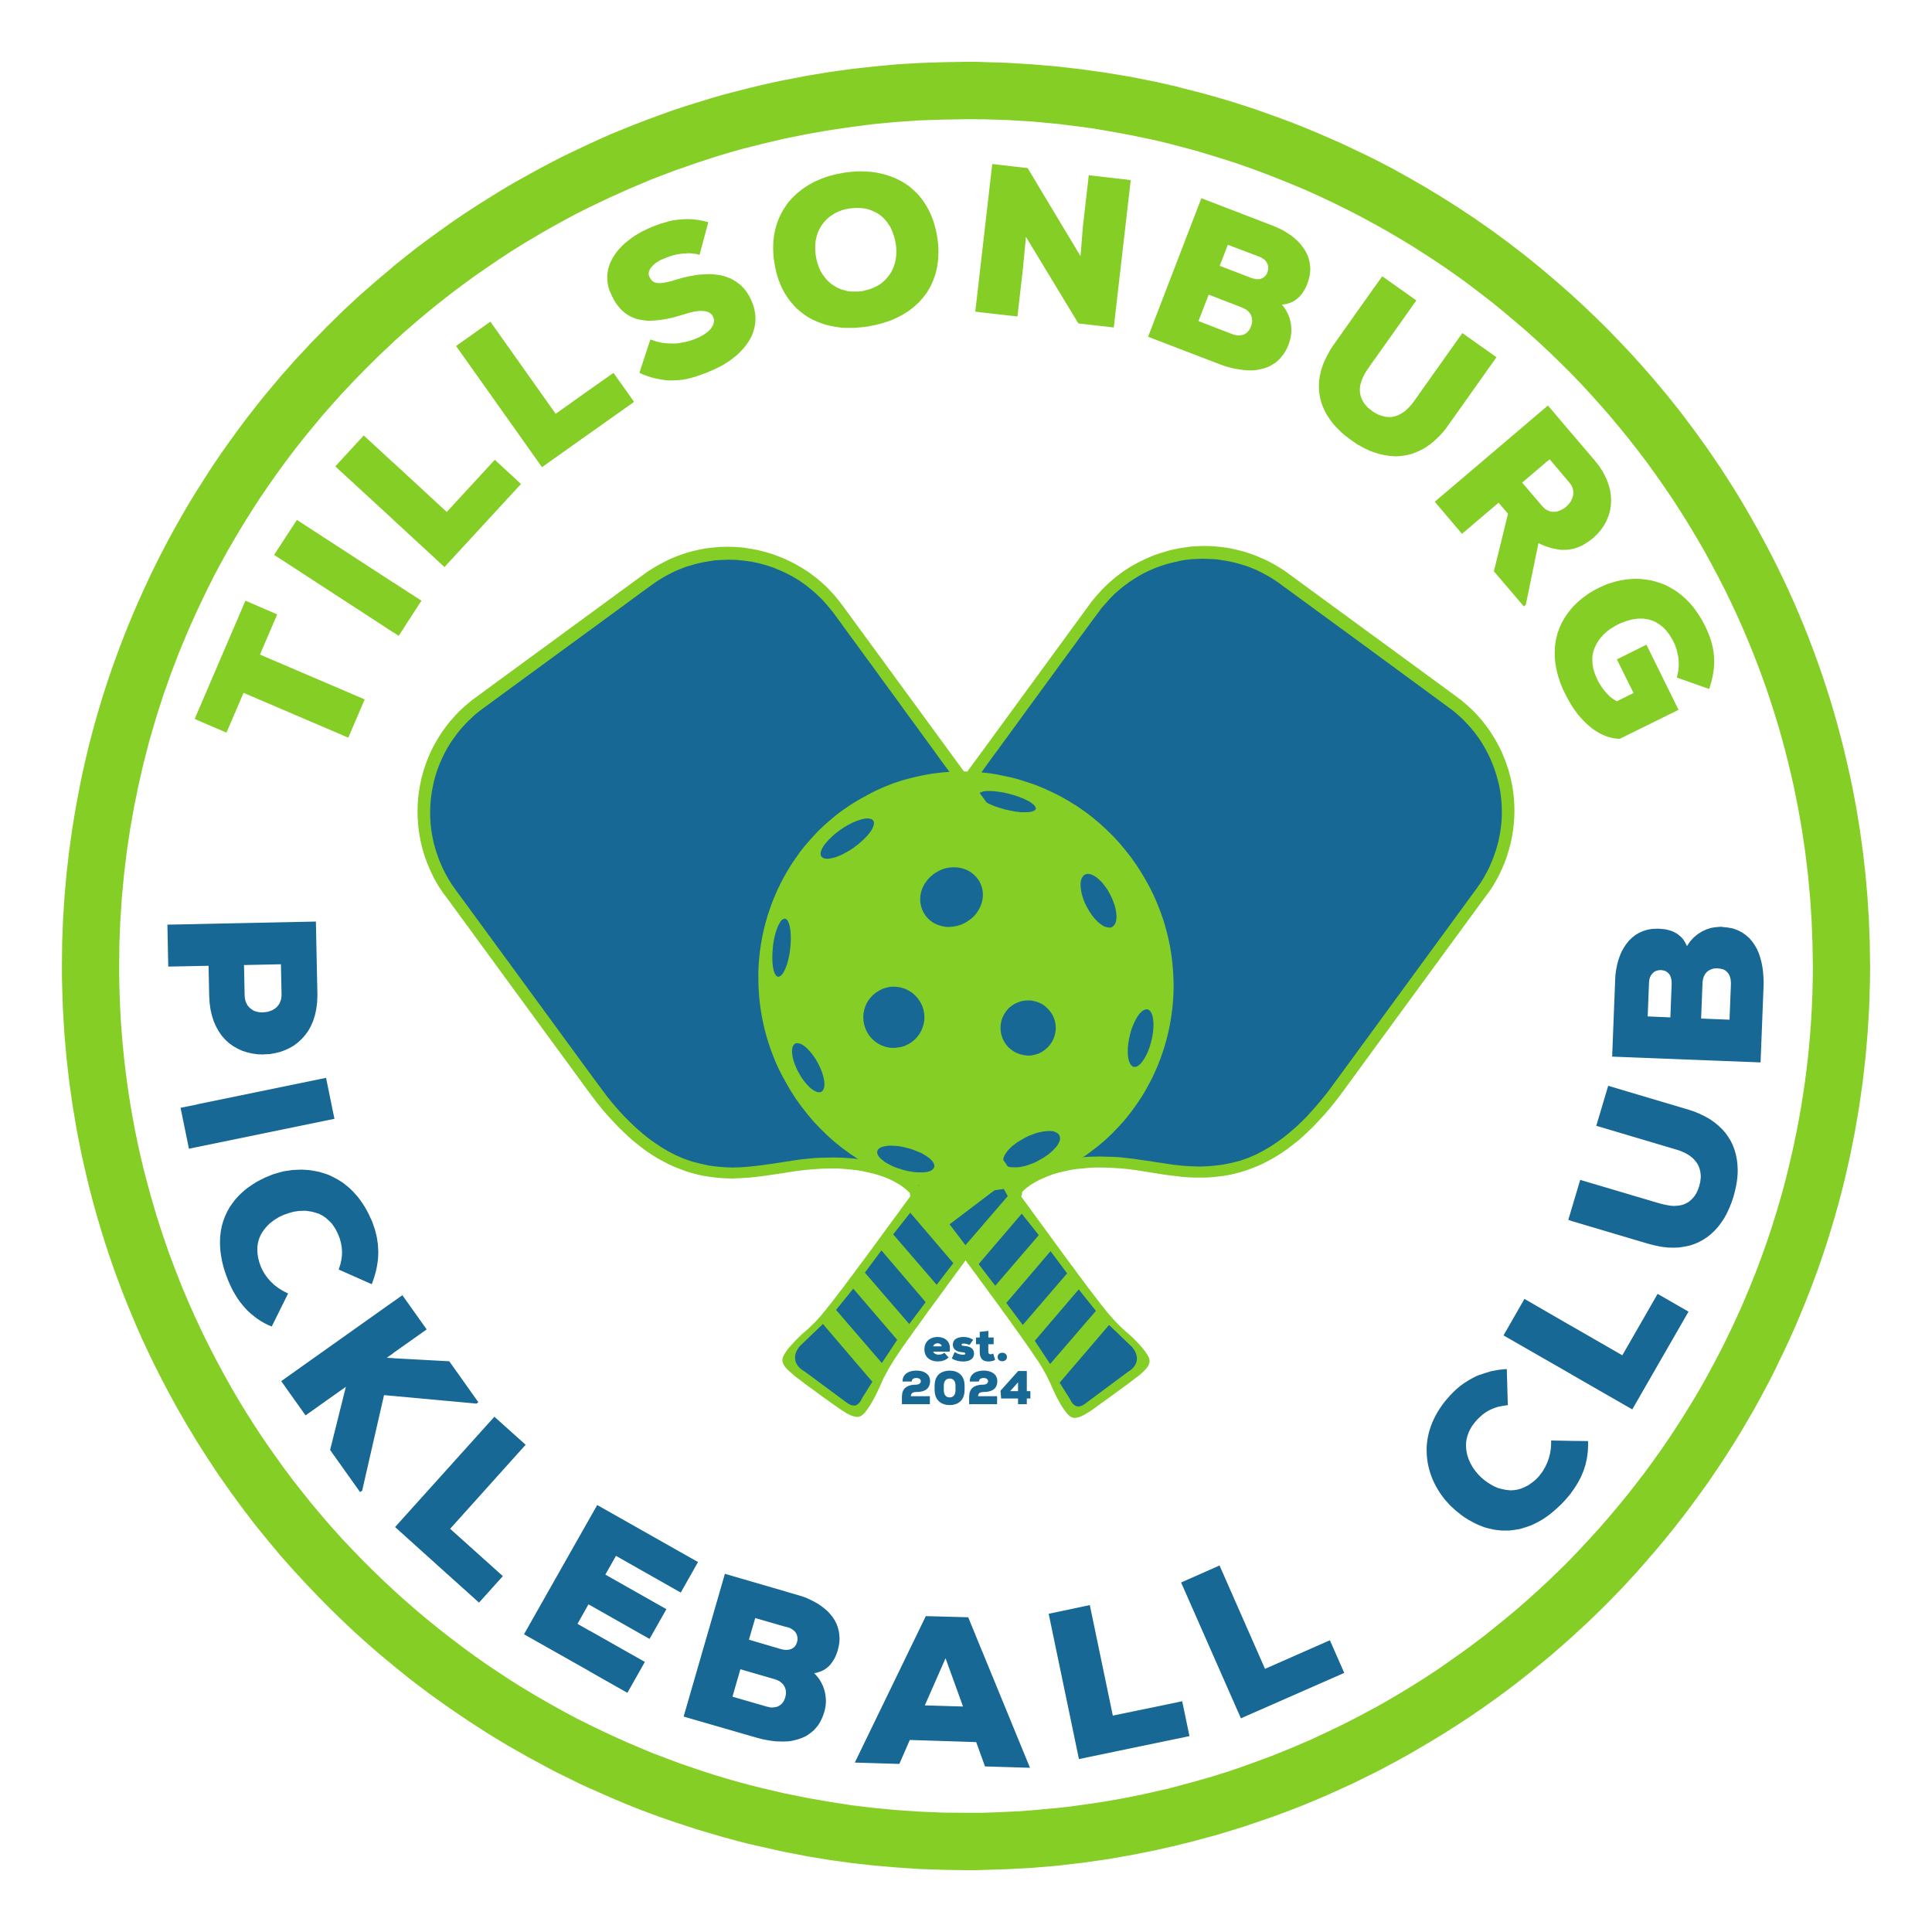 Tillsonburg Pickleball Club